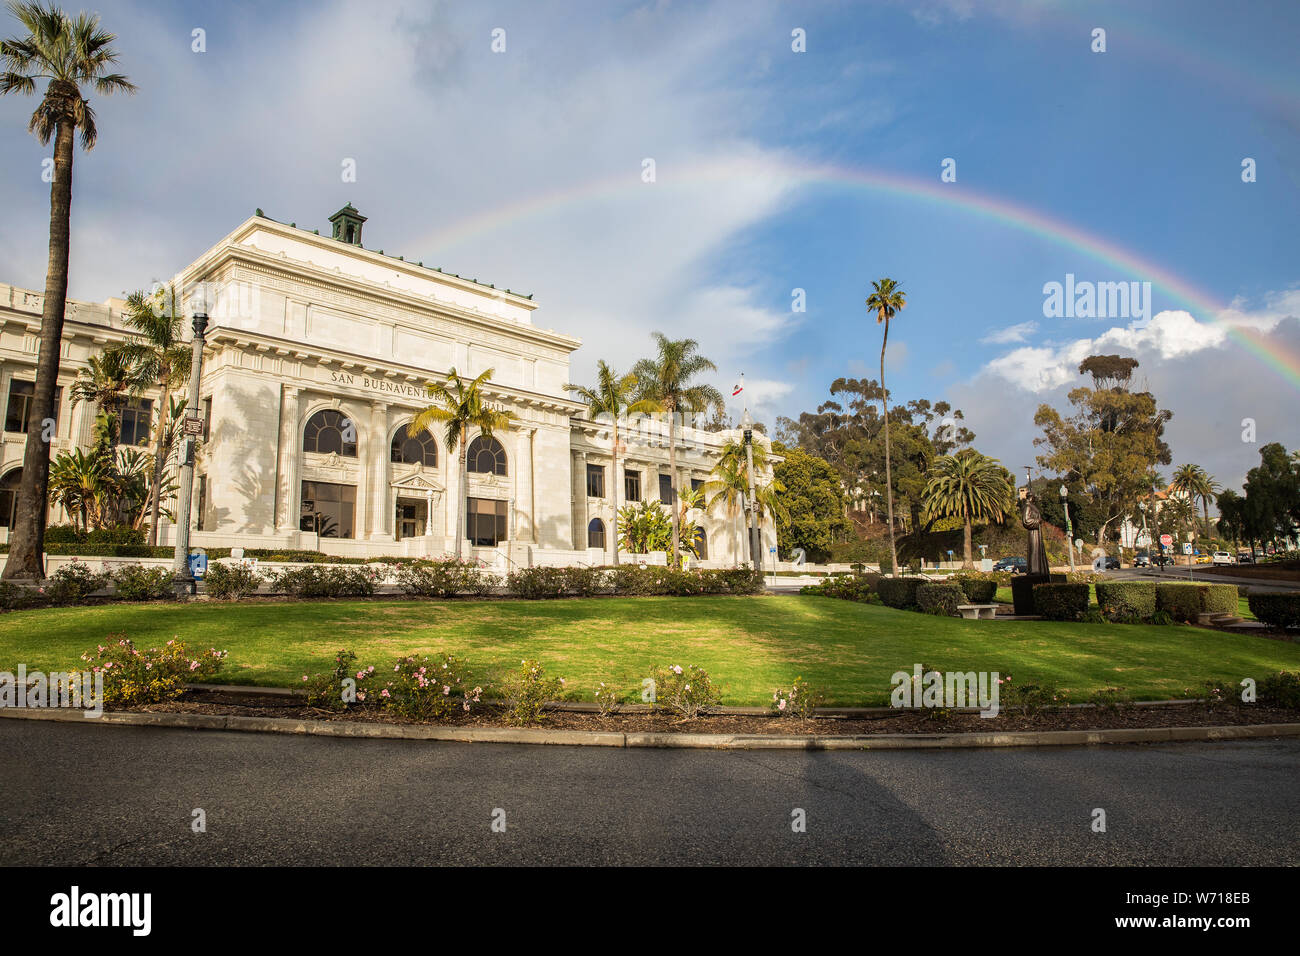 Il Tribunale presso la California Street nel bellissimo centro cittadino di Ventura, ca., appena dopo un acquazzone. Gennaio, 2019 Foto Stock